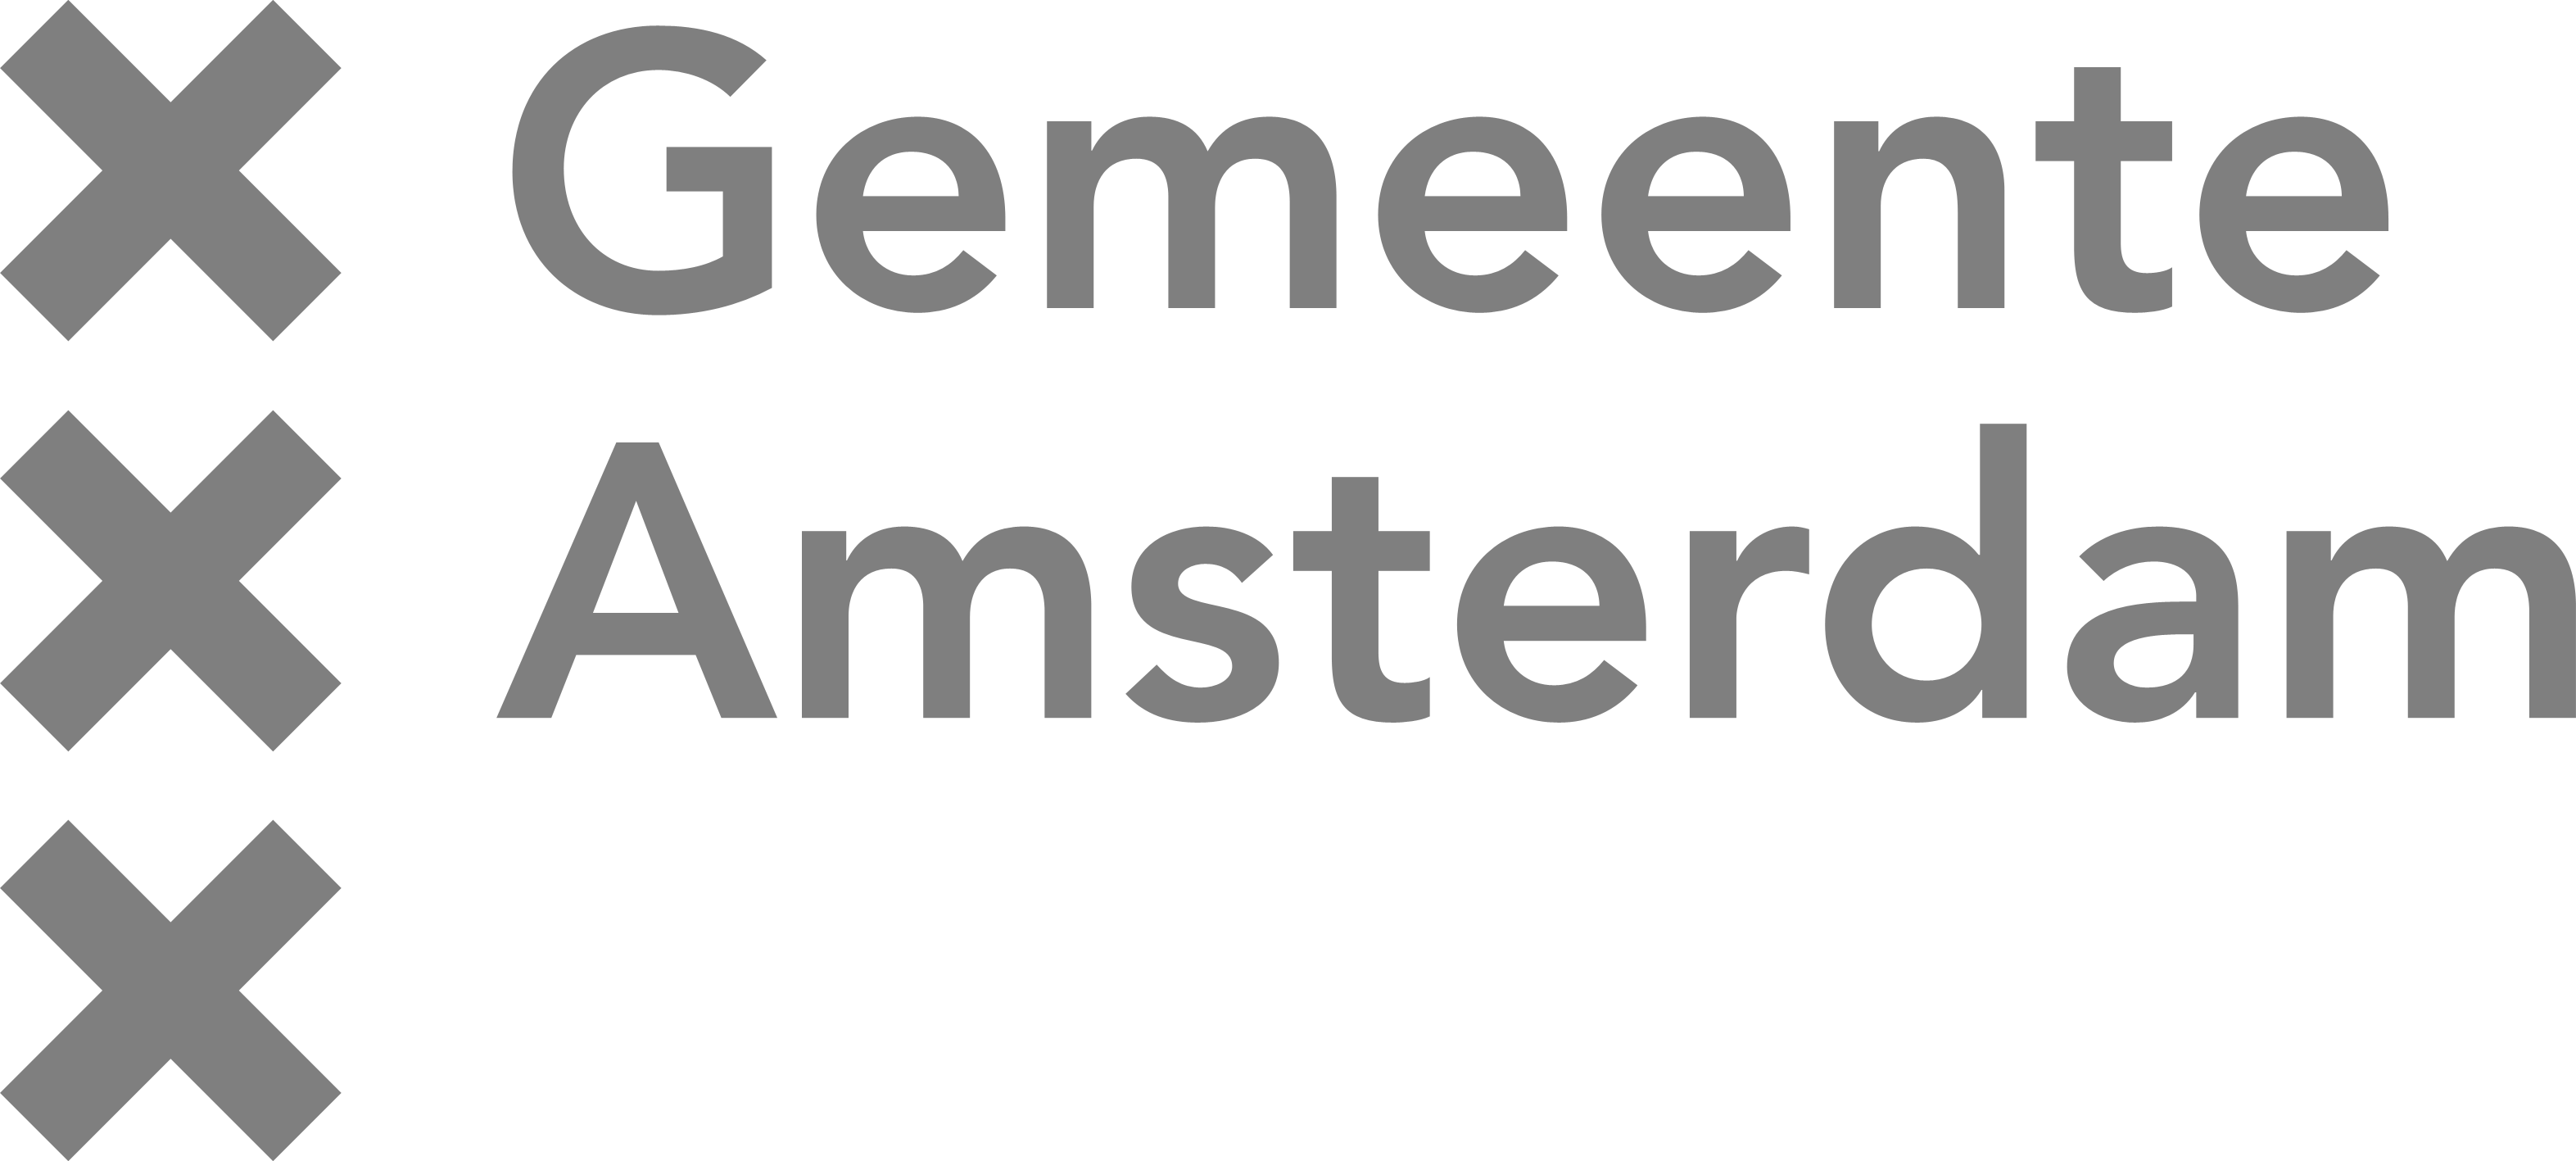 Bij gemeente Amsterdam werken we in de buitenruimte en aan projecten vanuit het ingenieursbureau.